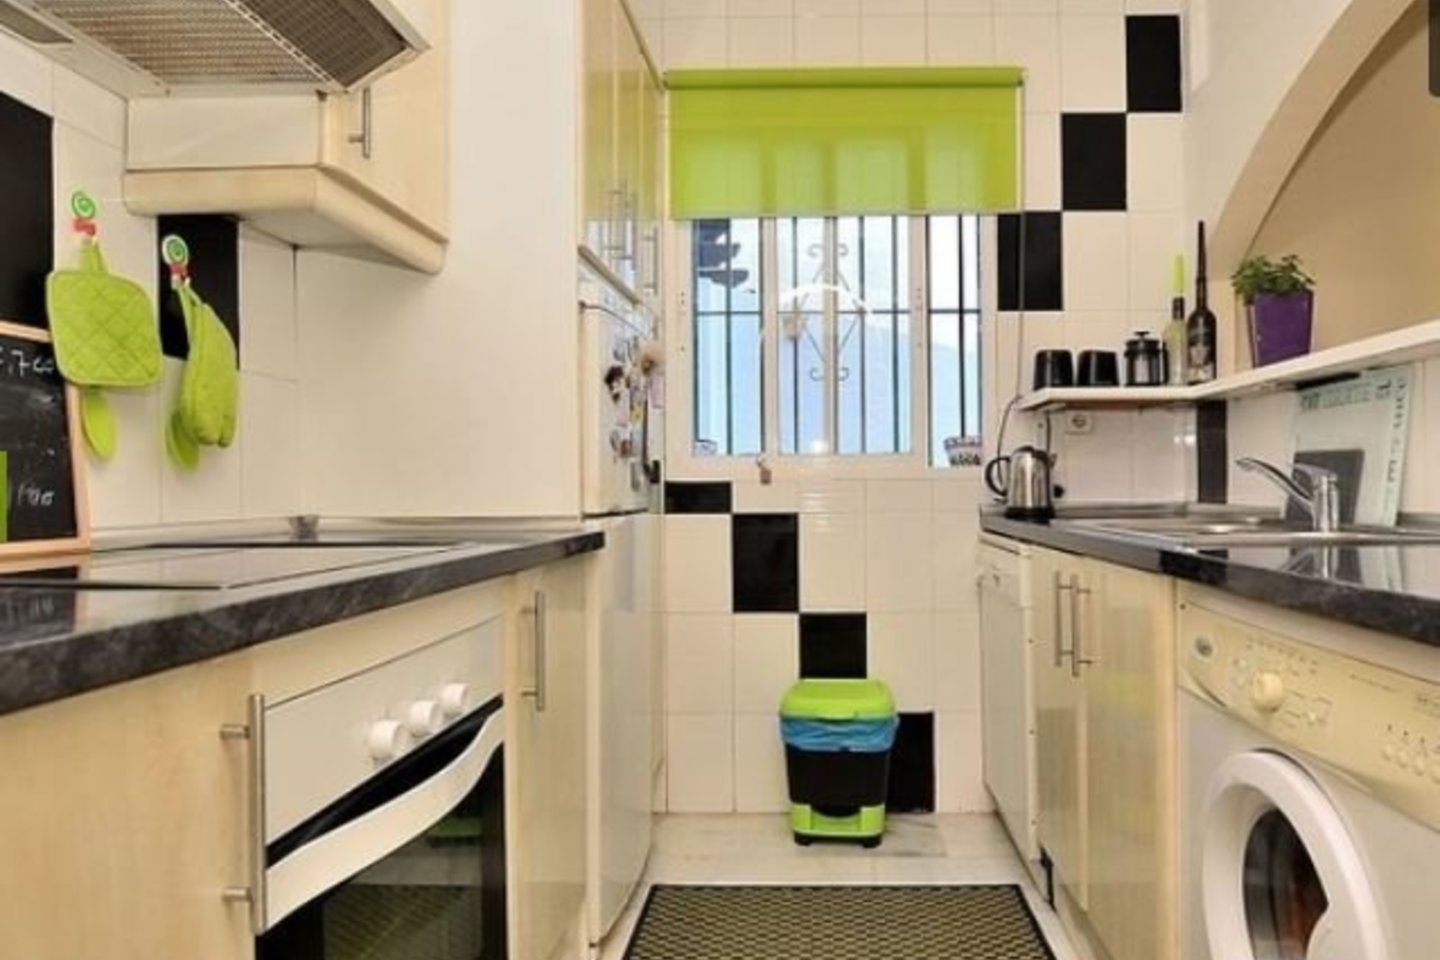 Malagoje 109 kv. m apartamentai su dviem vonios kambariais ir dviem terasomis, kurių viena – 20 kv. metrų, kainuoja 169 tūkst. eurų.